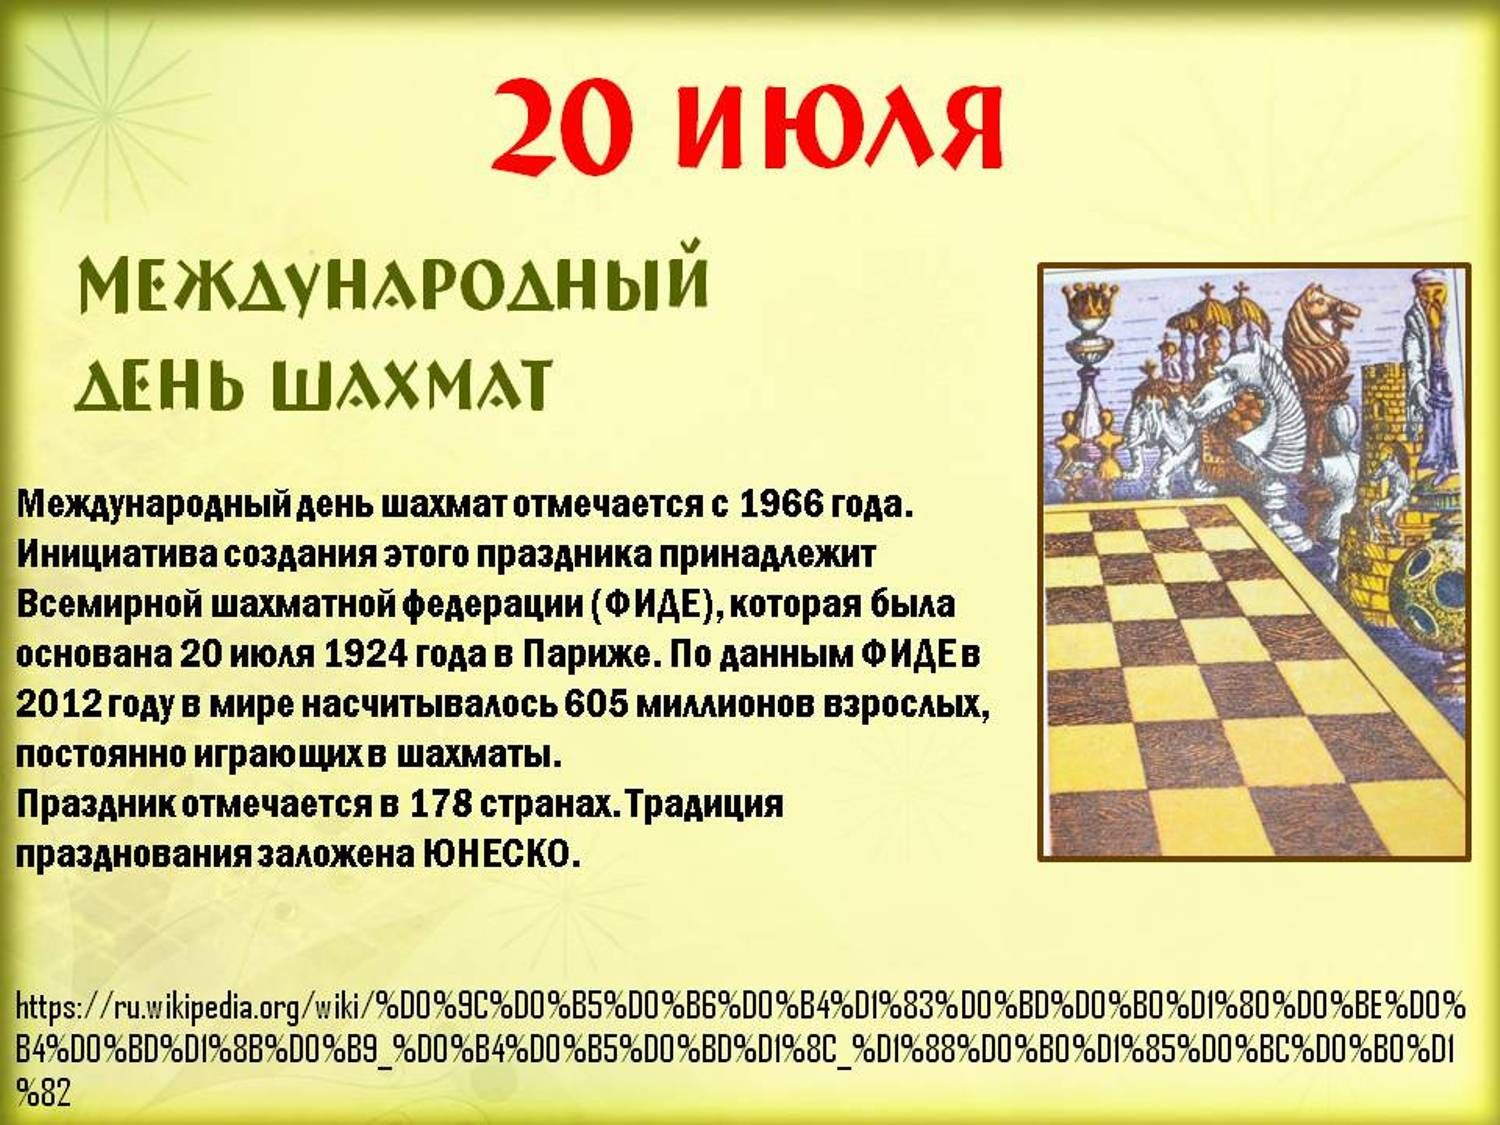 20 июля 2023 г. 20 Июля Международный день шахмат. 20 Июля праздник день шахмат. Международный день шахмат (International Chess Day). Шахматы 20 июля.